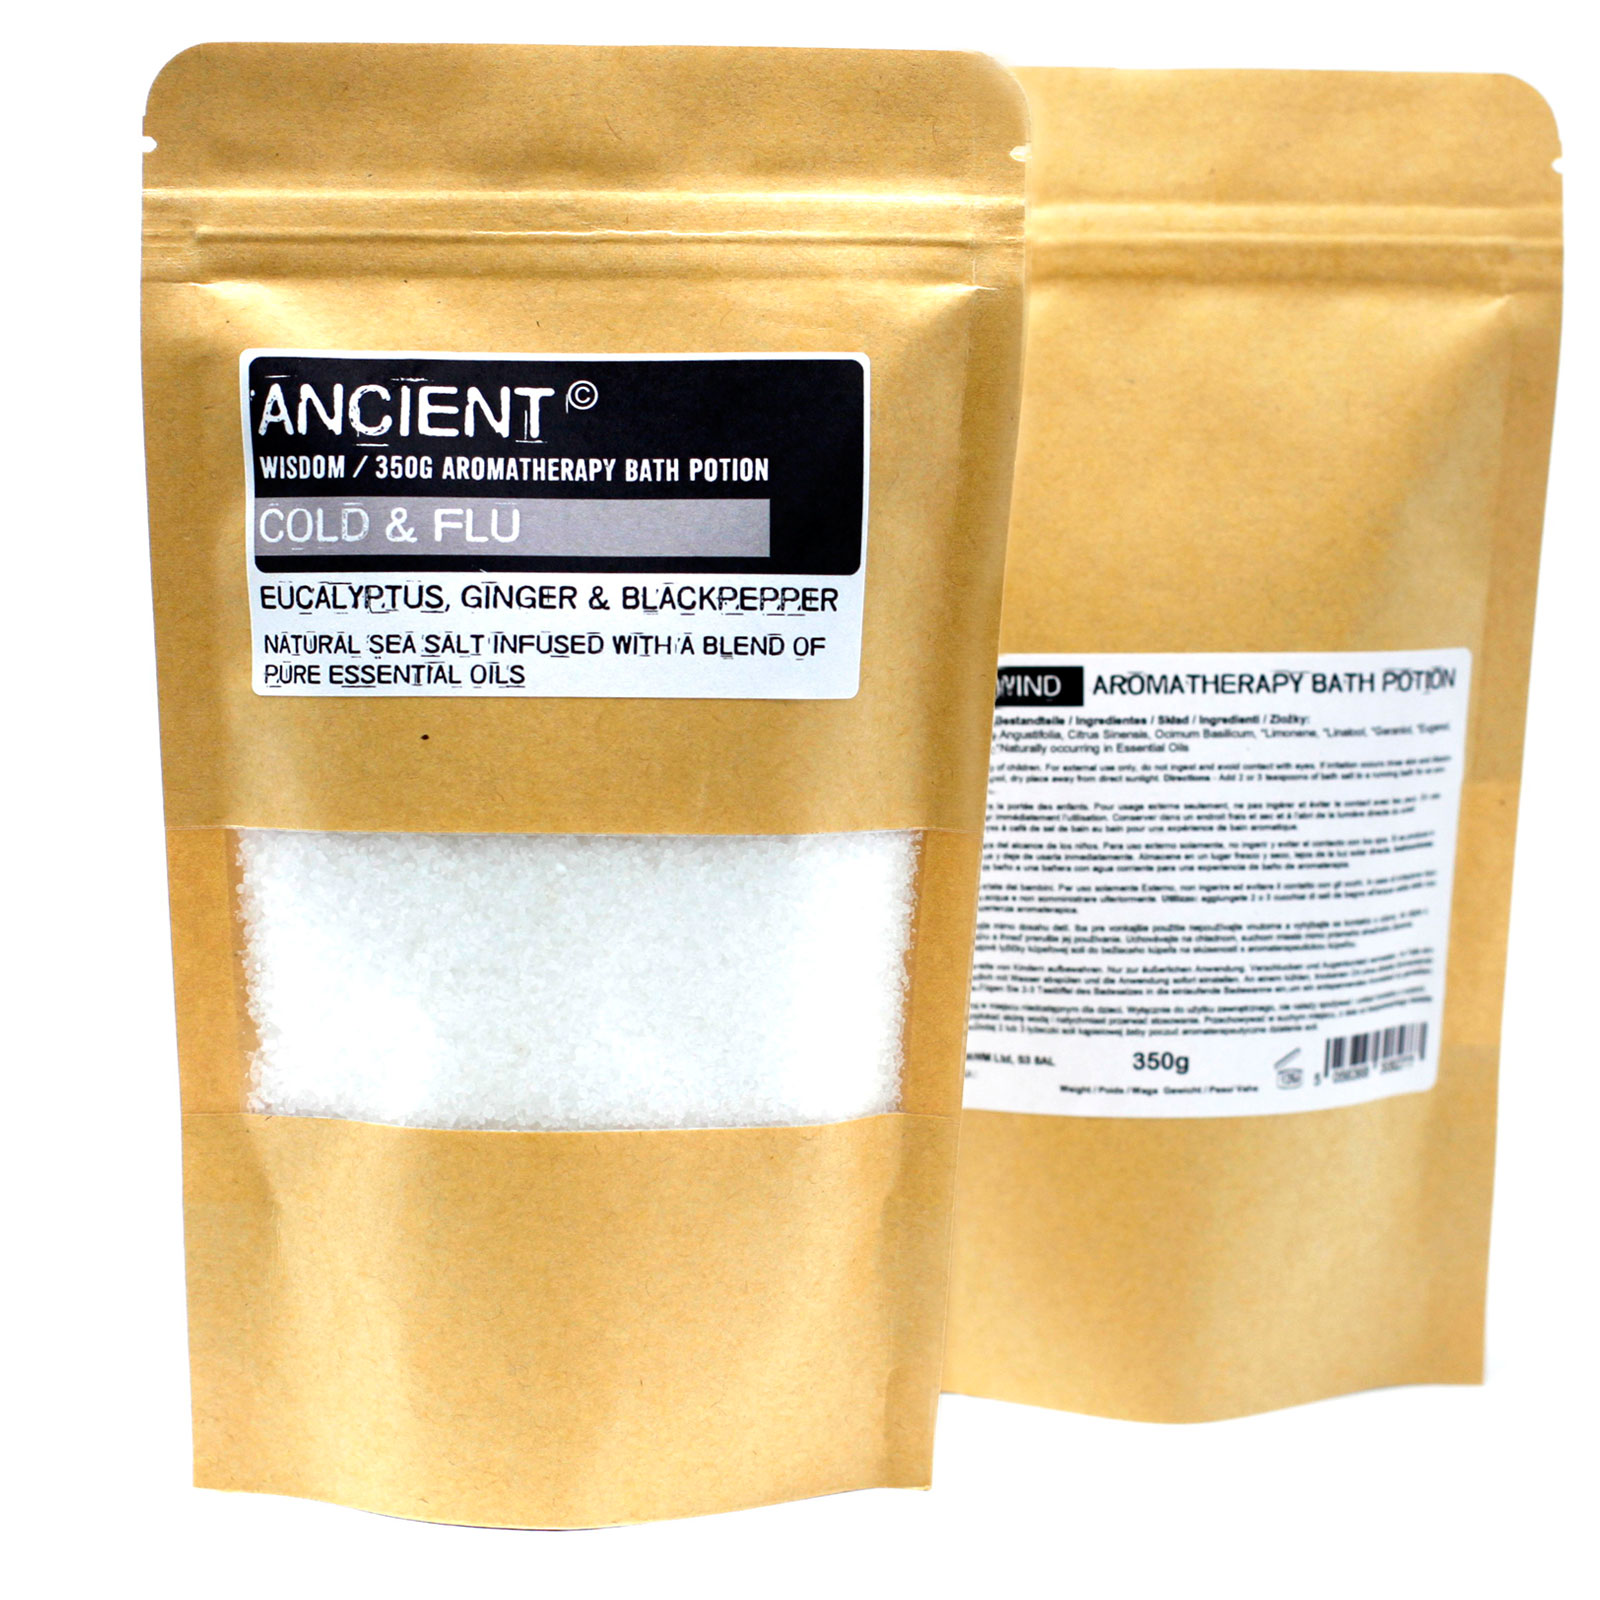 Aromaterapeutické soli do koupele v sáčcích 350g - Nachlazení a chřipka (5 balení)